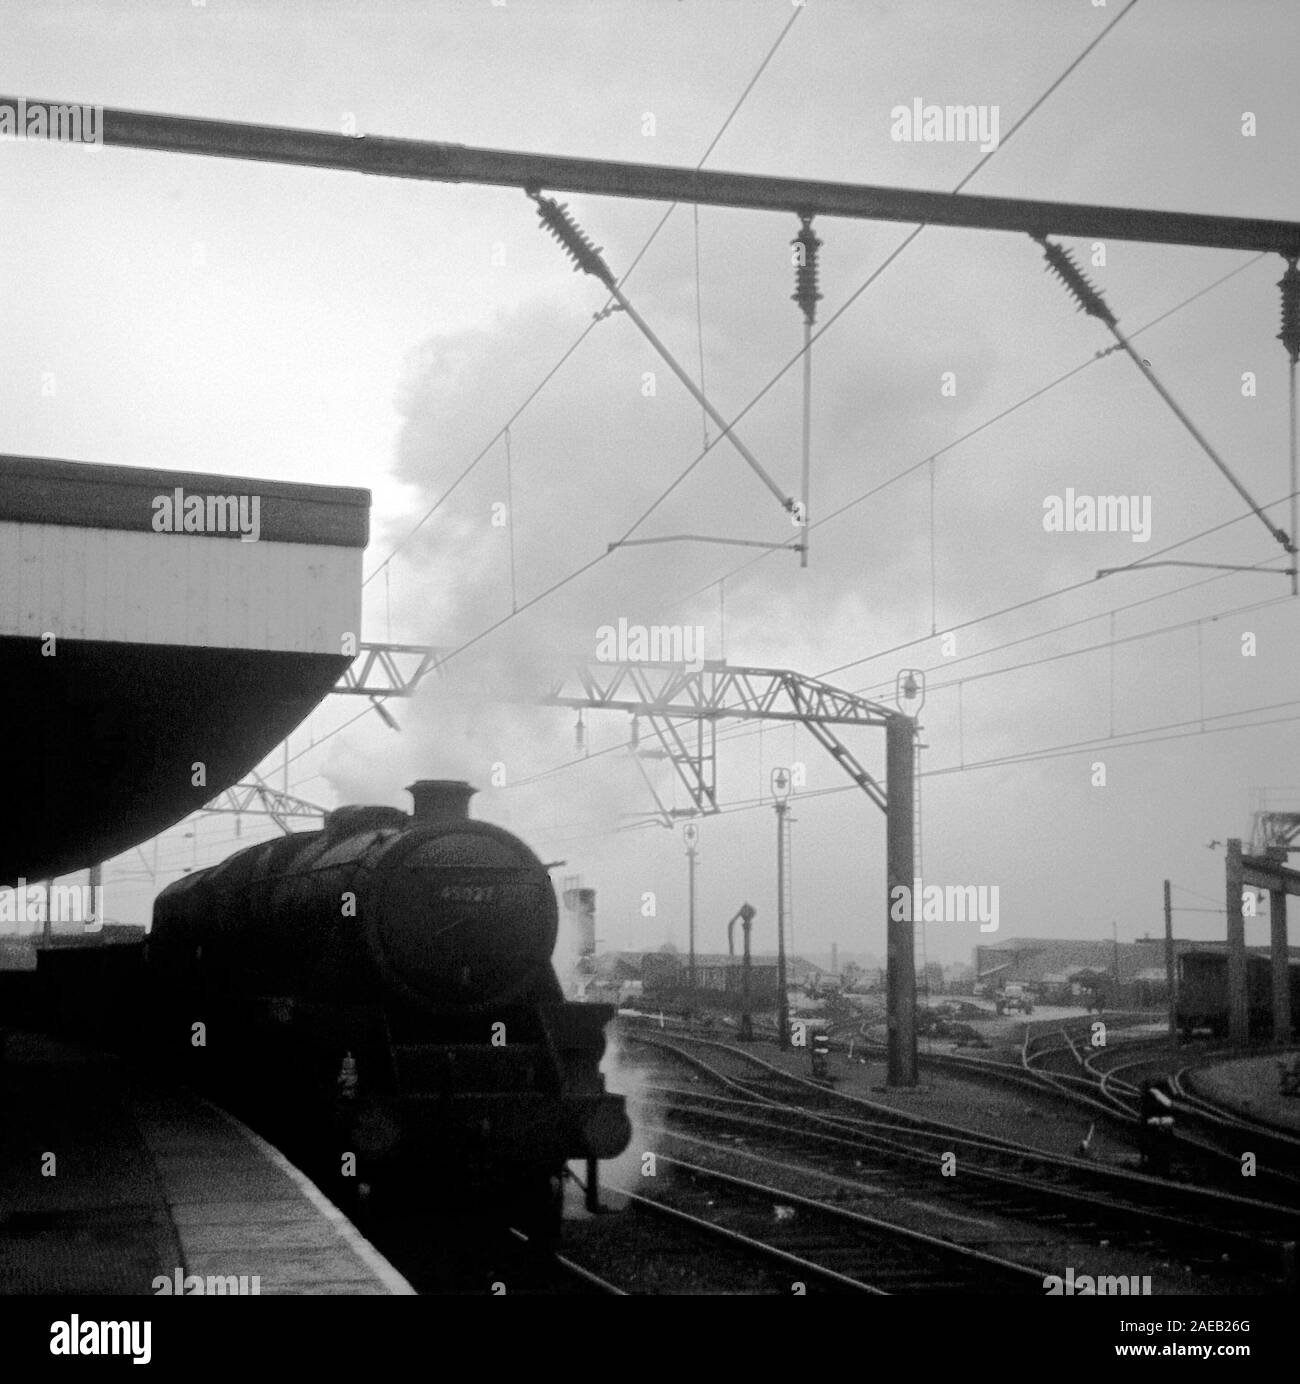 Les trains à vapeur fonctionnant sur British Railways en 1967, vers la fin de la ligne principale de la vapeur à Stockport, Lancashire, dans le Nord de l'Angleterre, Royaume-Uni Banque D'Images